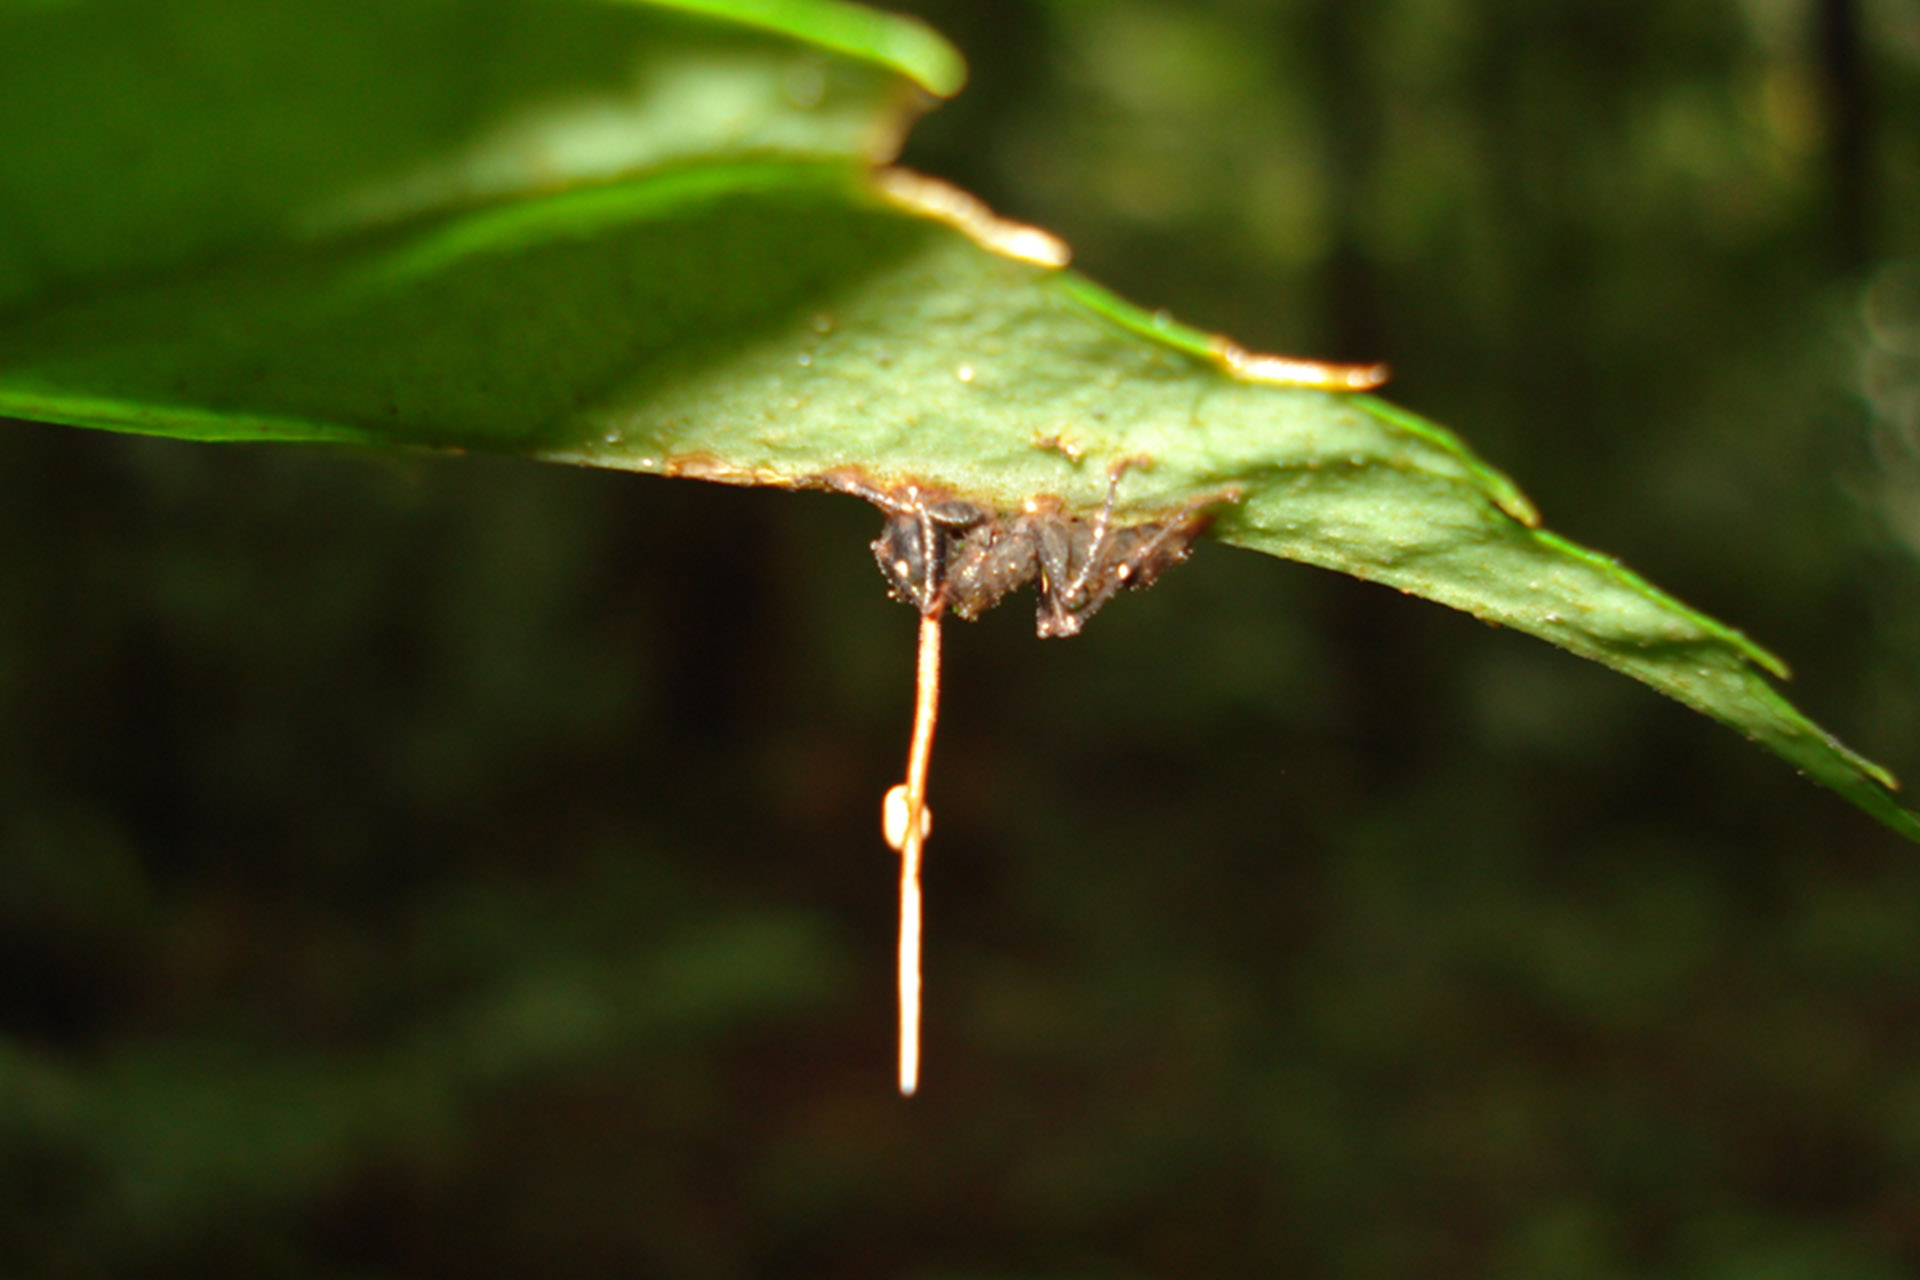 Через несколько дней гриб убивает муравья, образует плодовое тело и начинает распространять споры